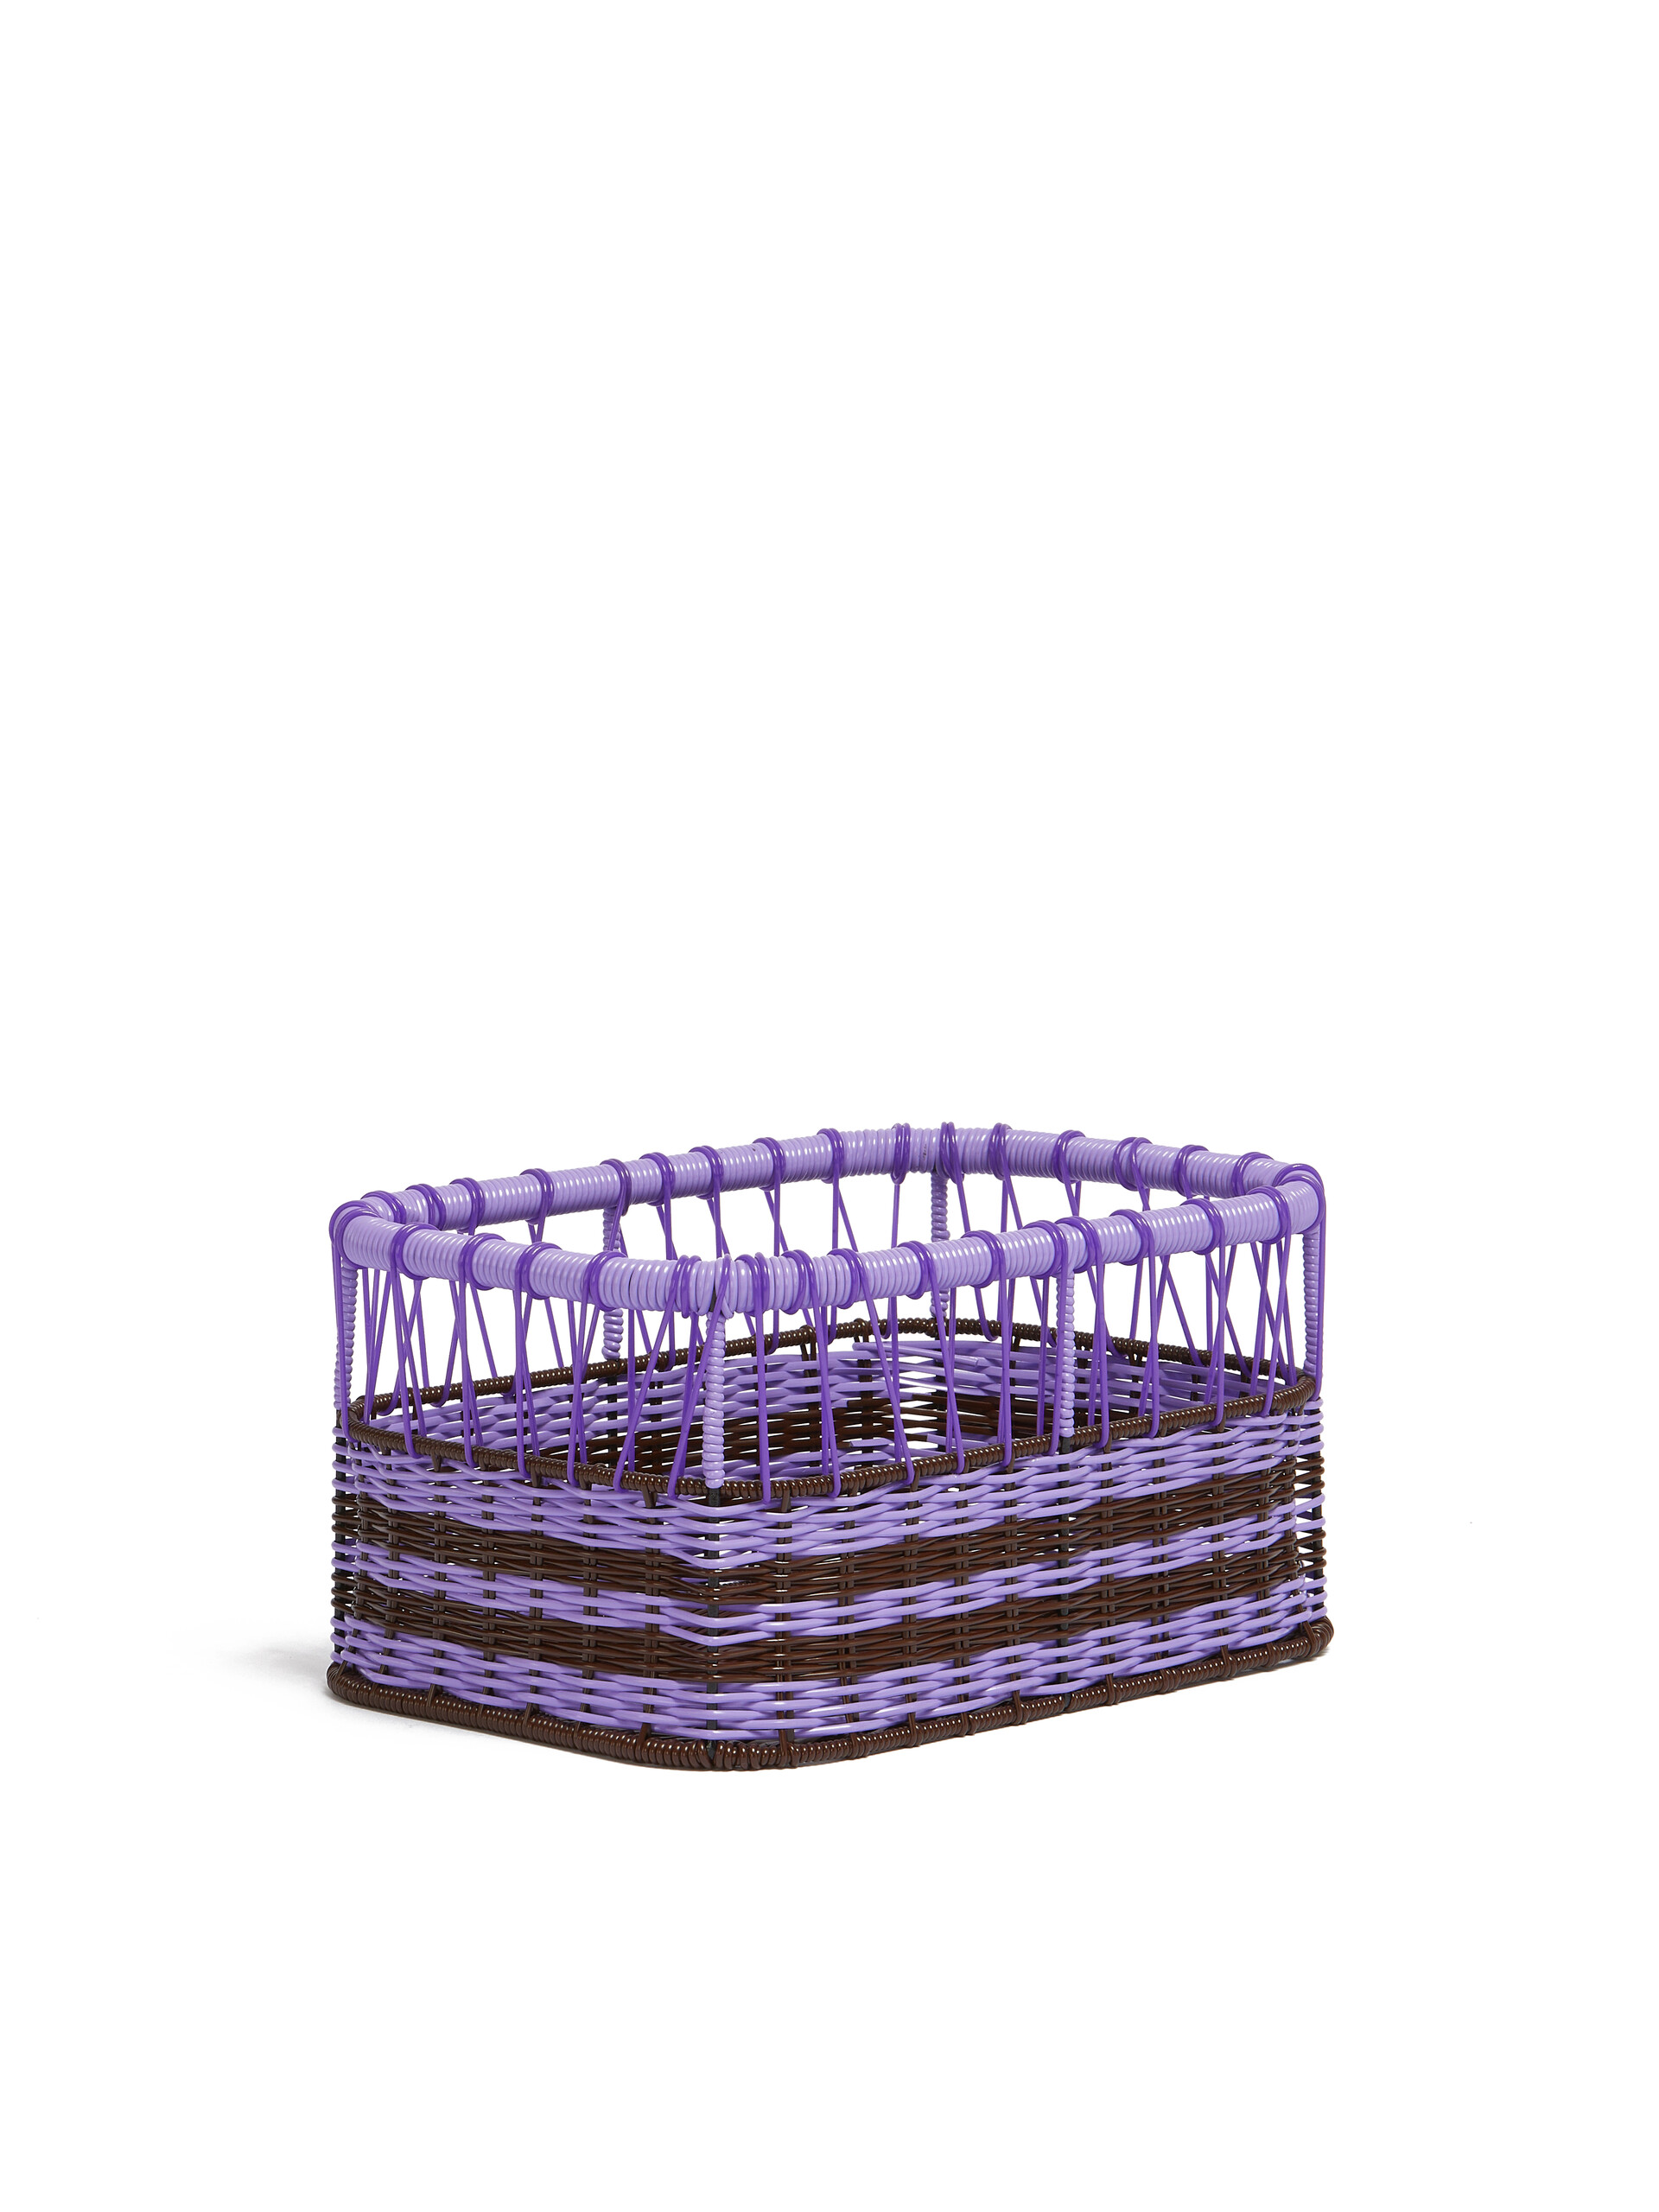 Lilac Marni Market oblong storage basket - Furniture - Image 2